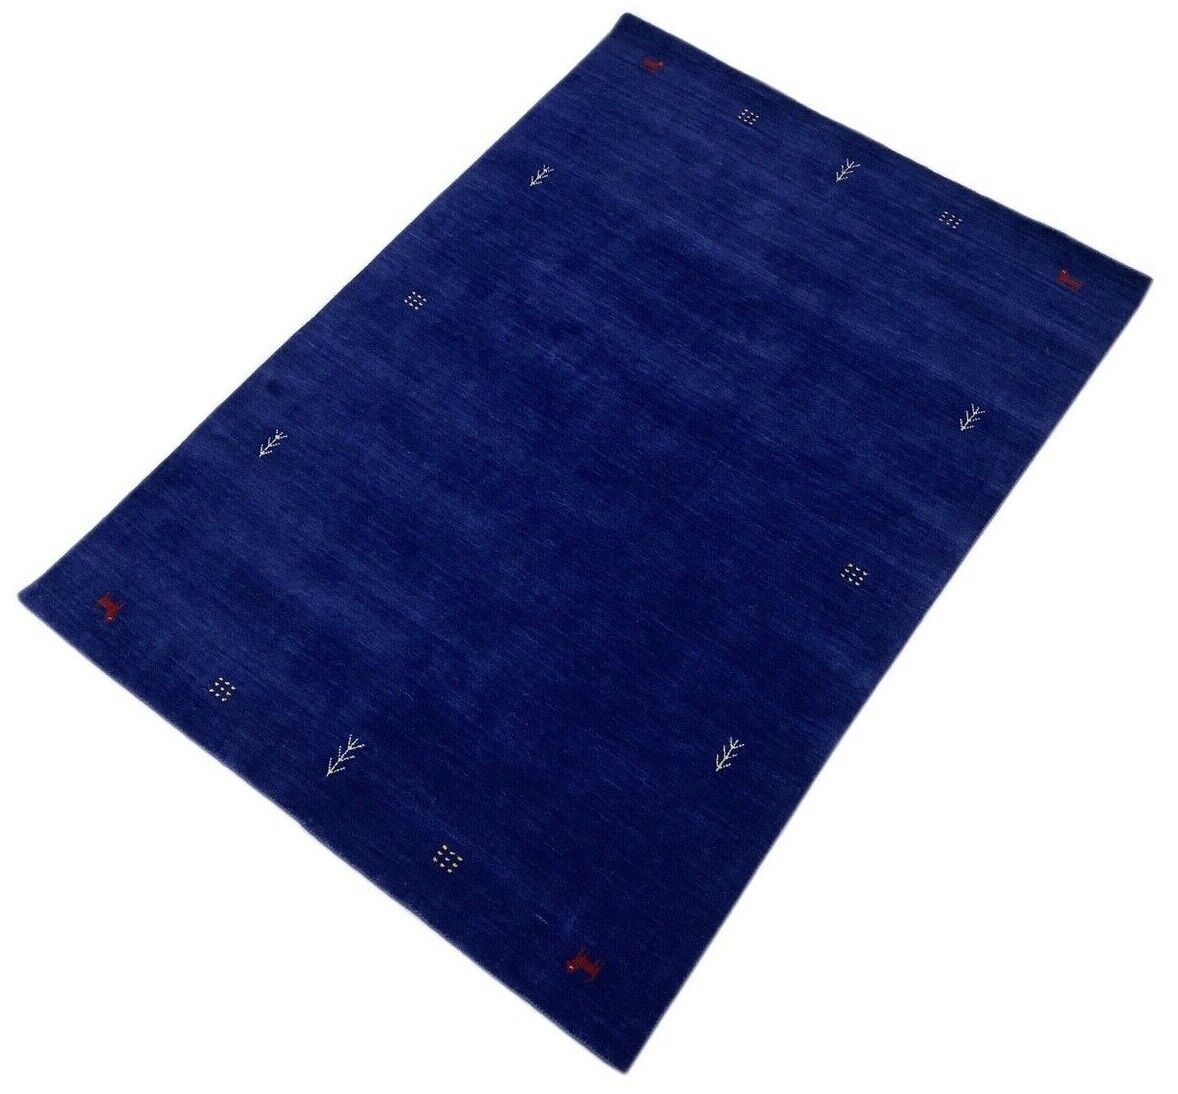 Blau Teppich 100% Wolle Gabbeh 170x240 cm Orientteppich Handgewebt wr6